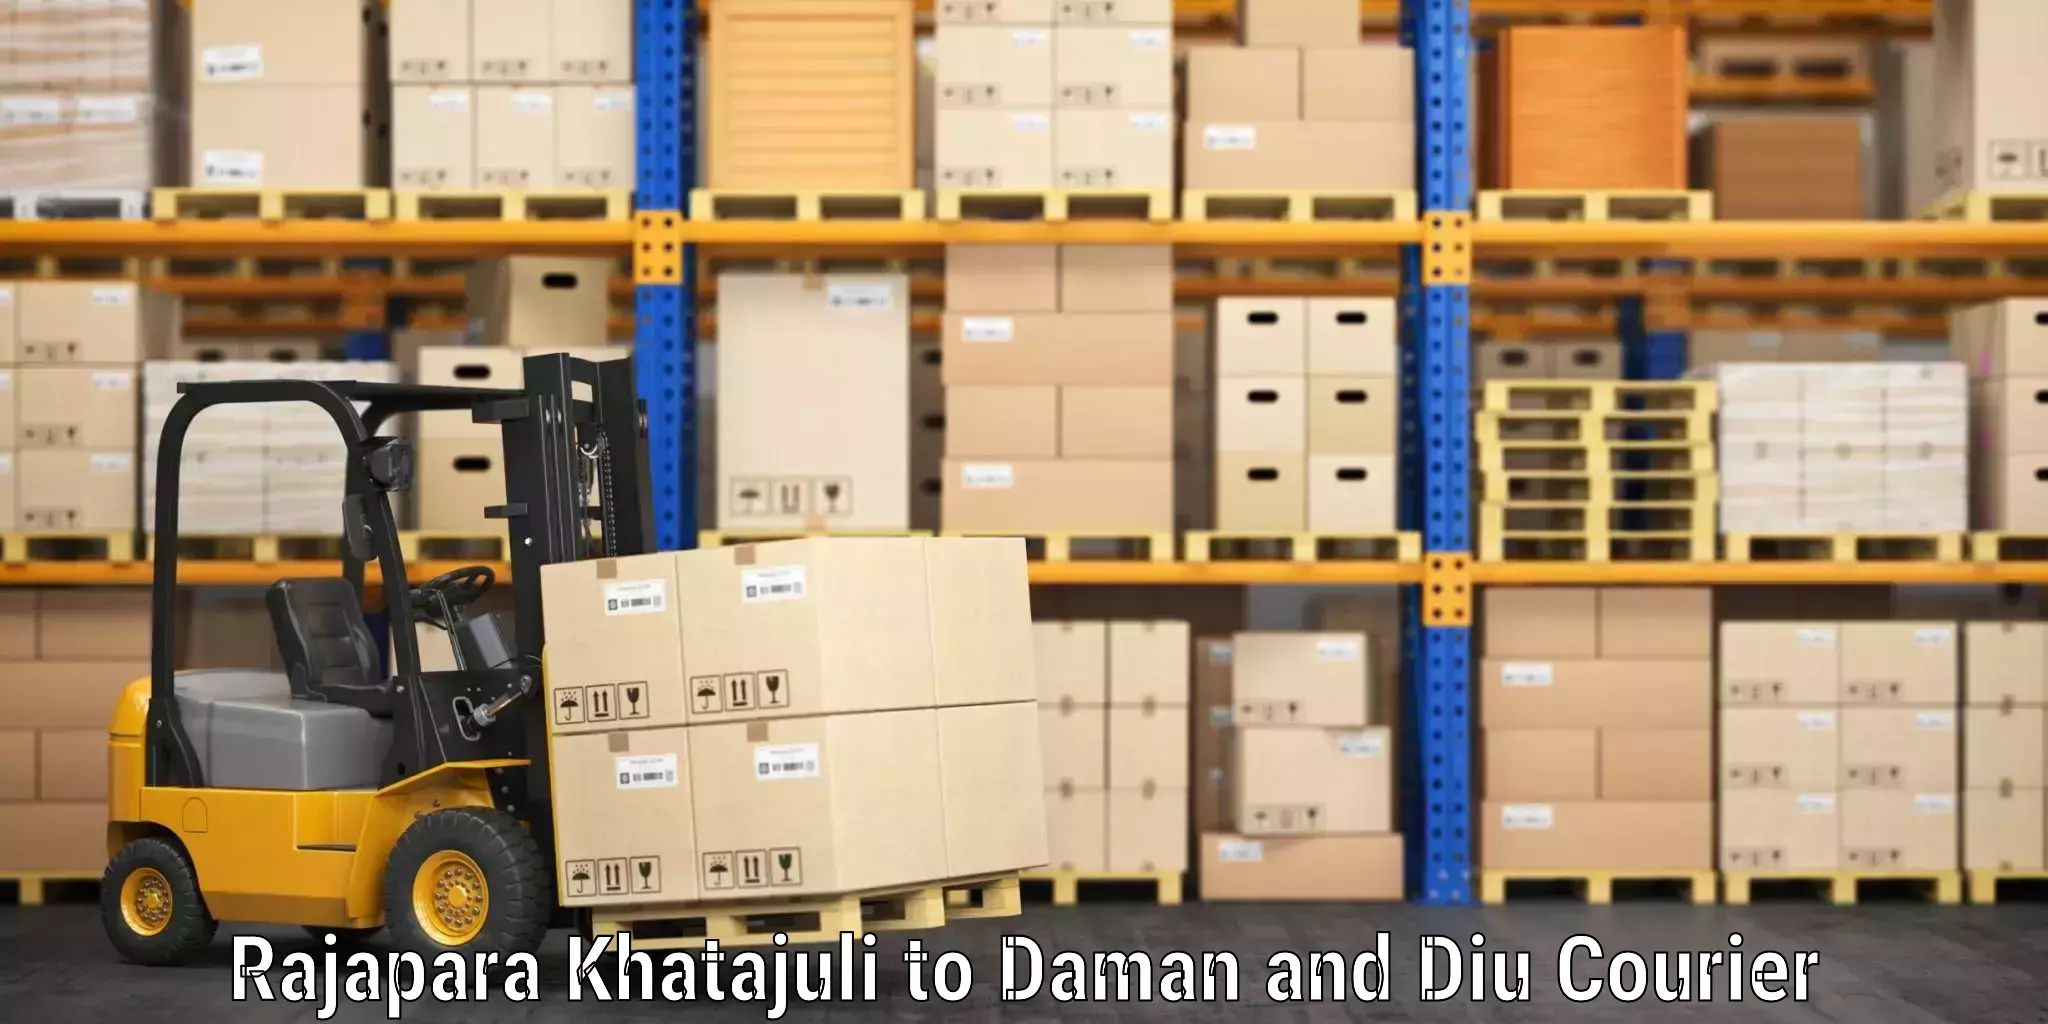 Luggage shipping planner Rajapara Khatajuli to Diu